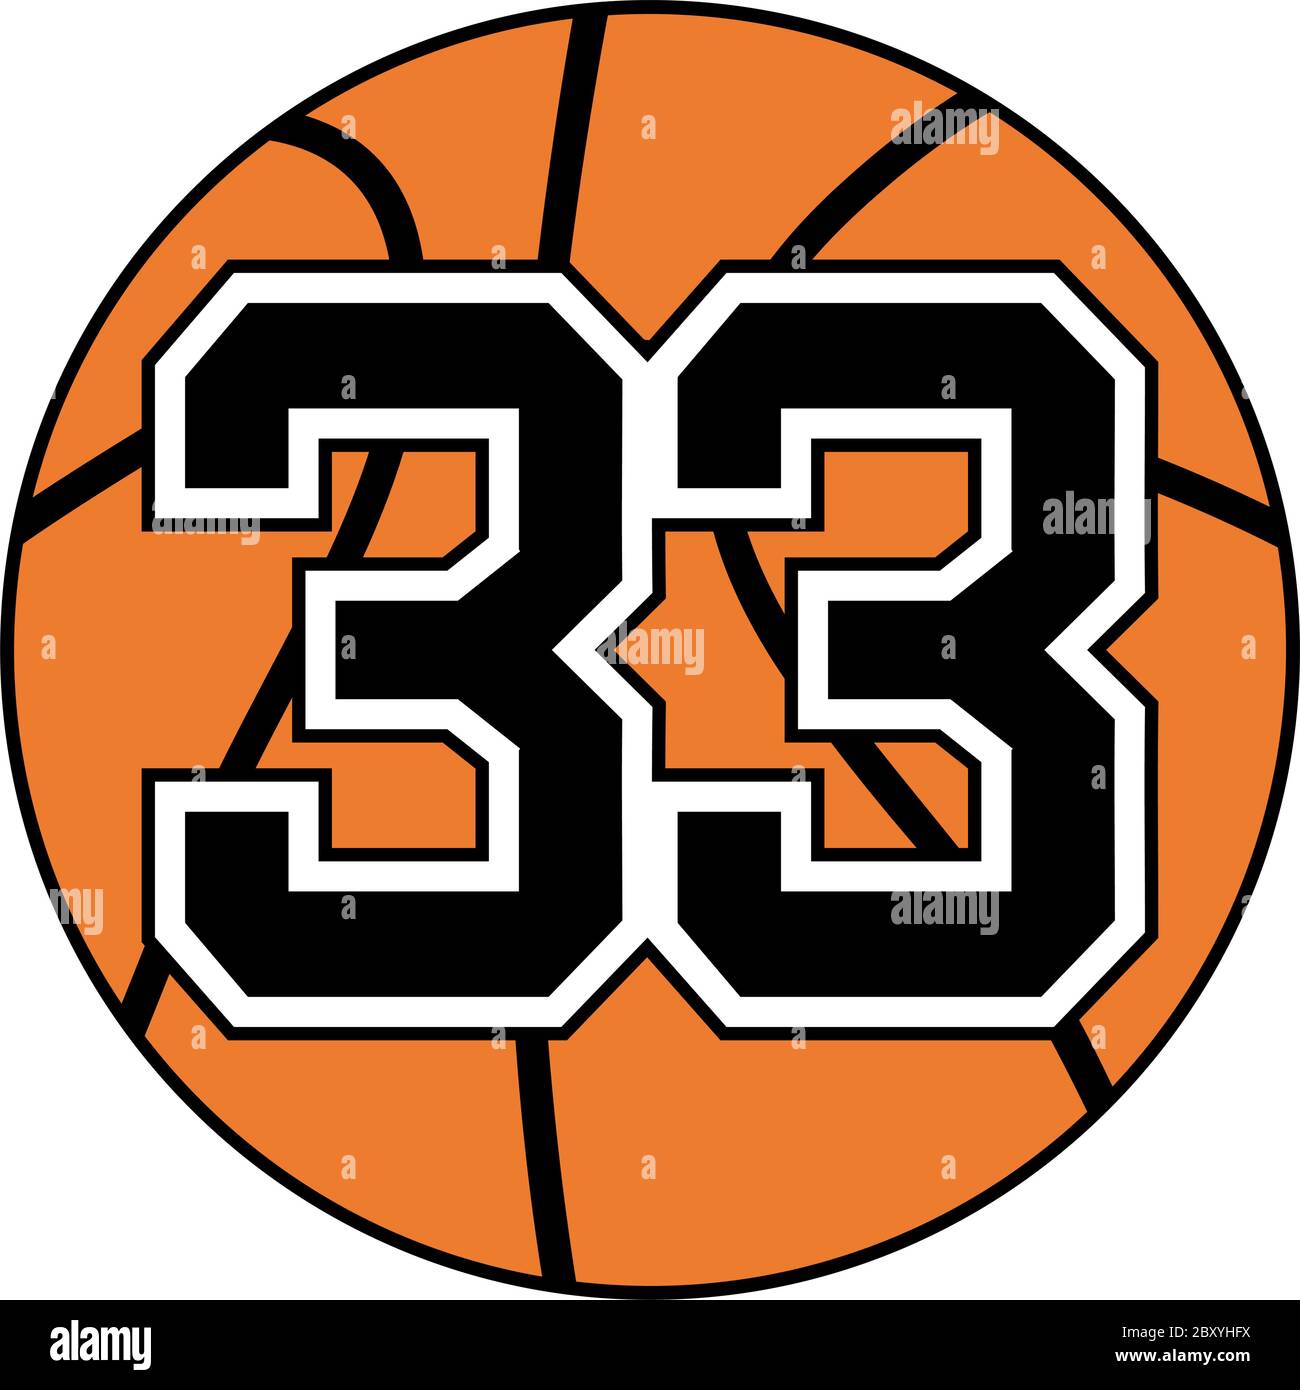 symbole ballon de basket-ball avec numéro 33 Image Vectorielle Stock - Alamy